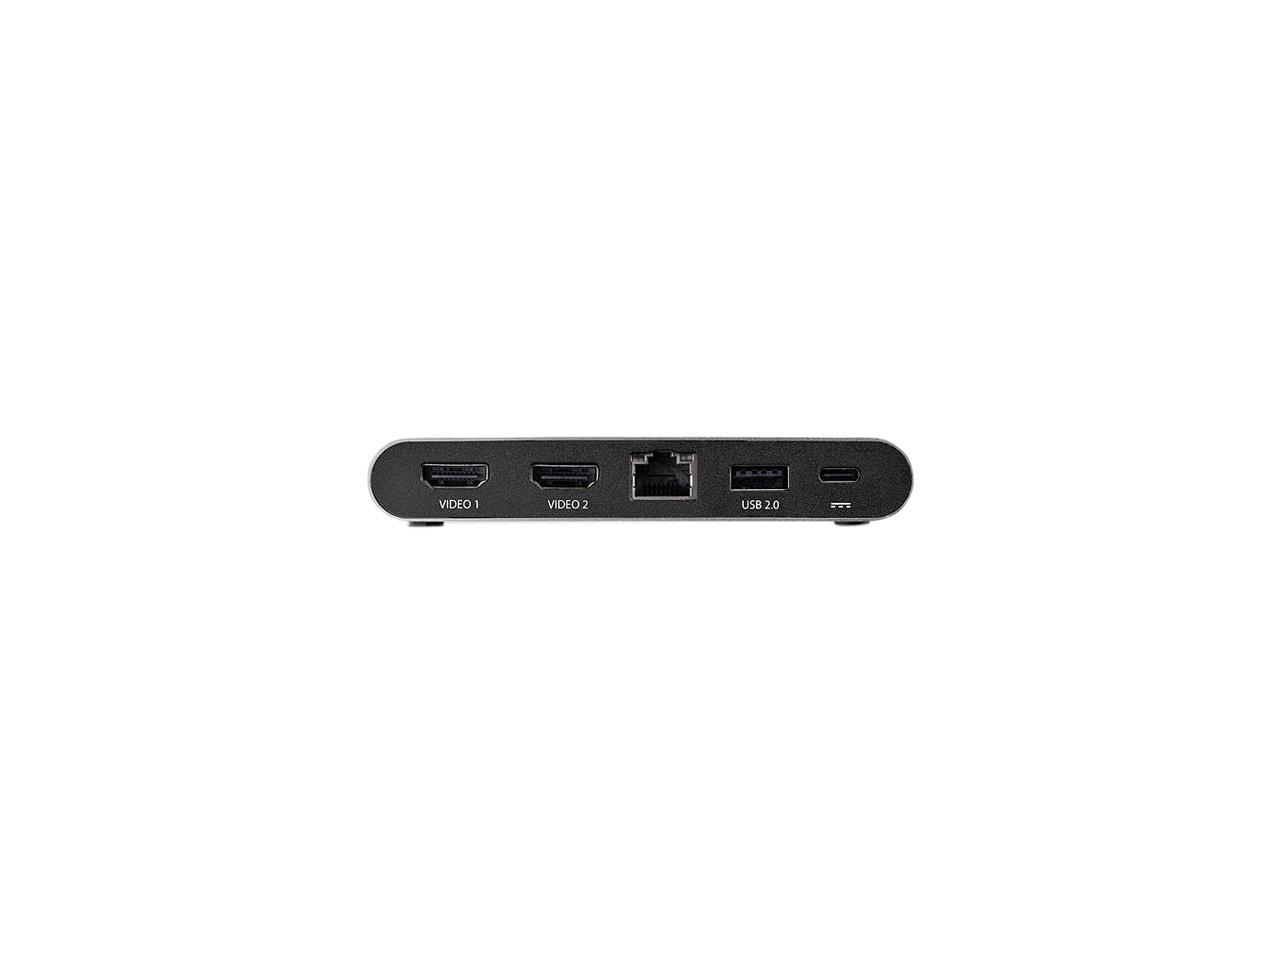 StarTech.com DK30C2HAGPD USB-C Multiport Adapter - Dual-Monitor - Windows - USB-C to Dual 4K HDMI Adapter - 2 x USB-A Ports - 100W PD 3.0 - GbE